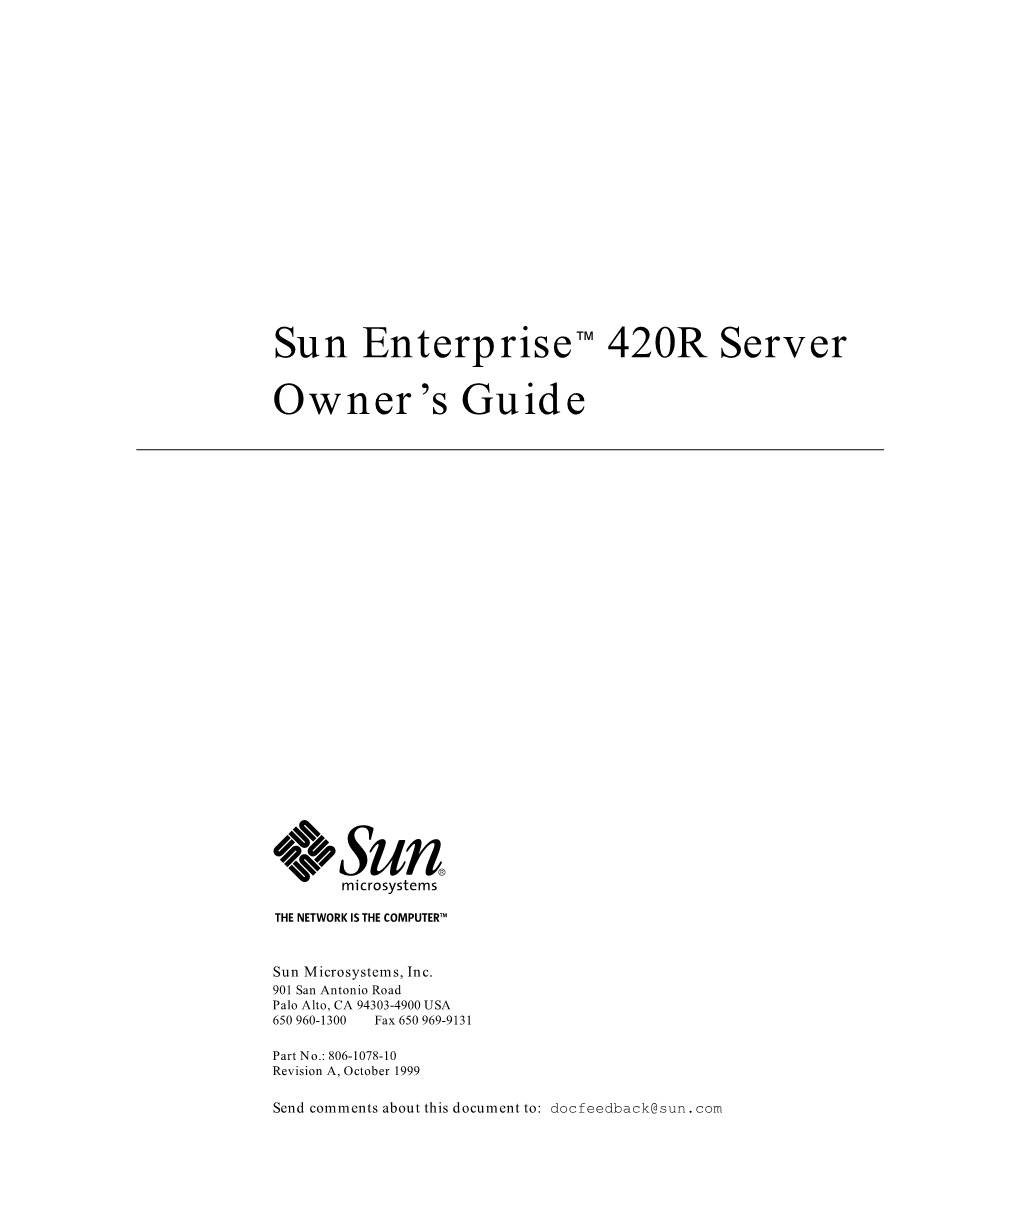 Sun Enterprise 420R Server Owner's Guide